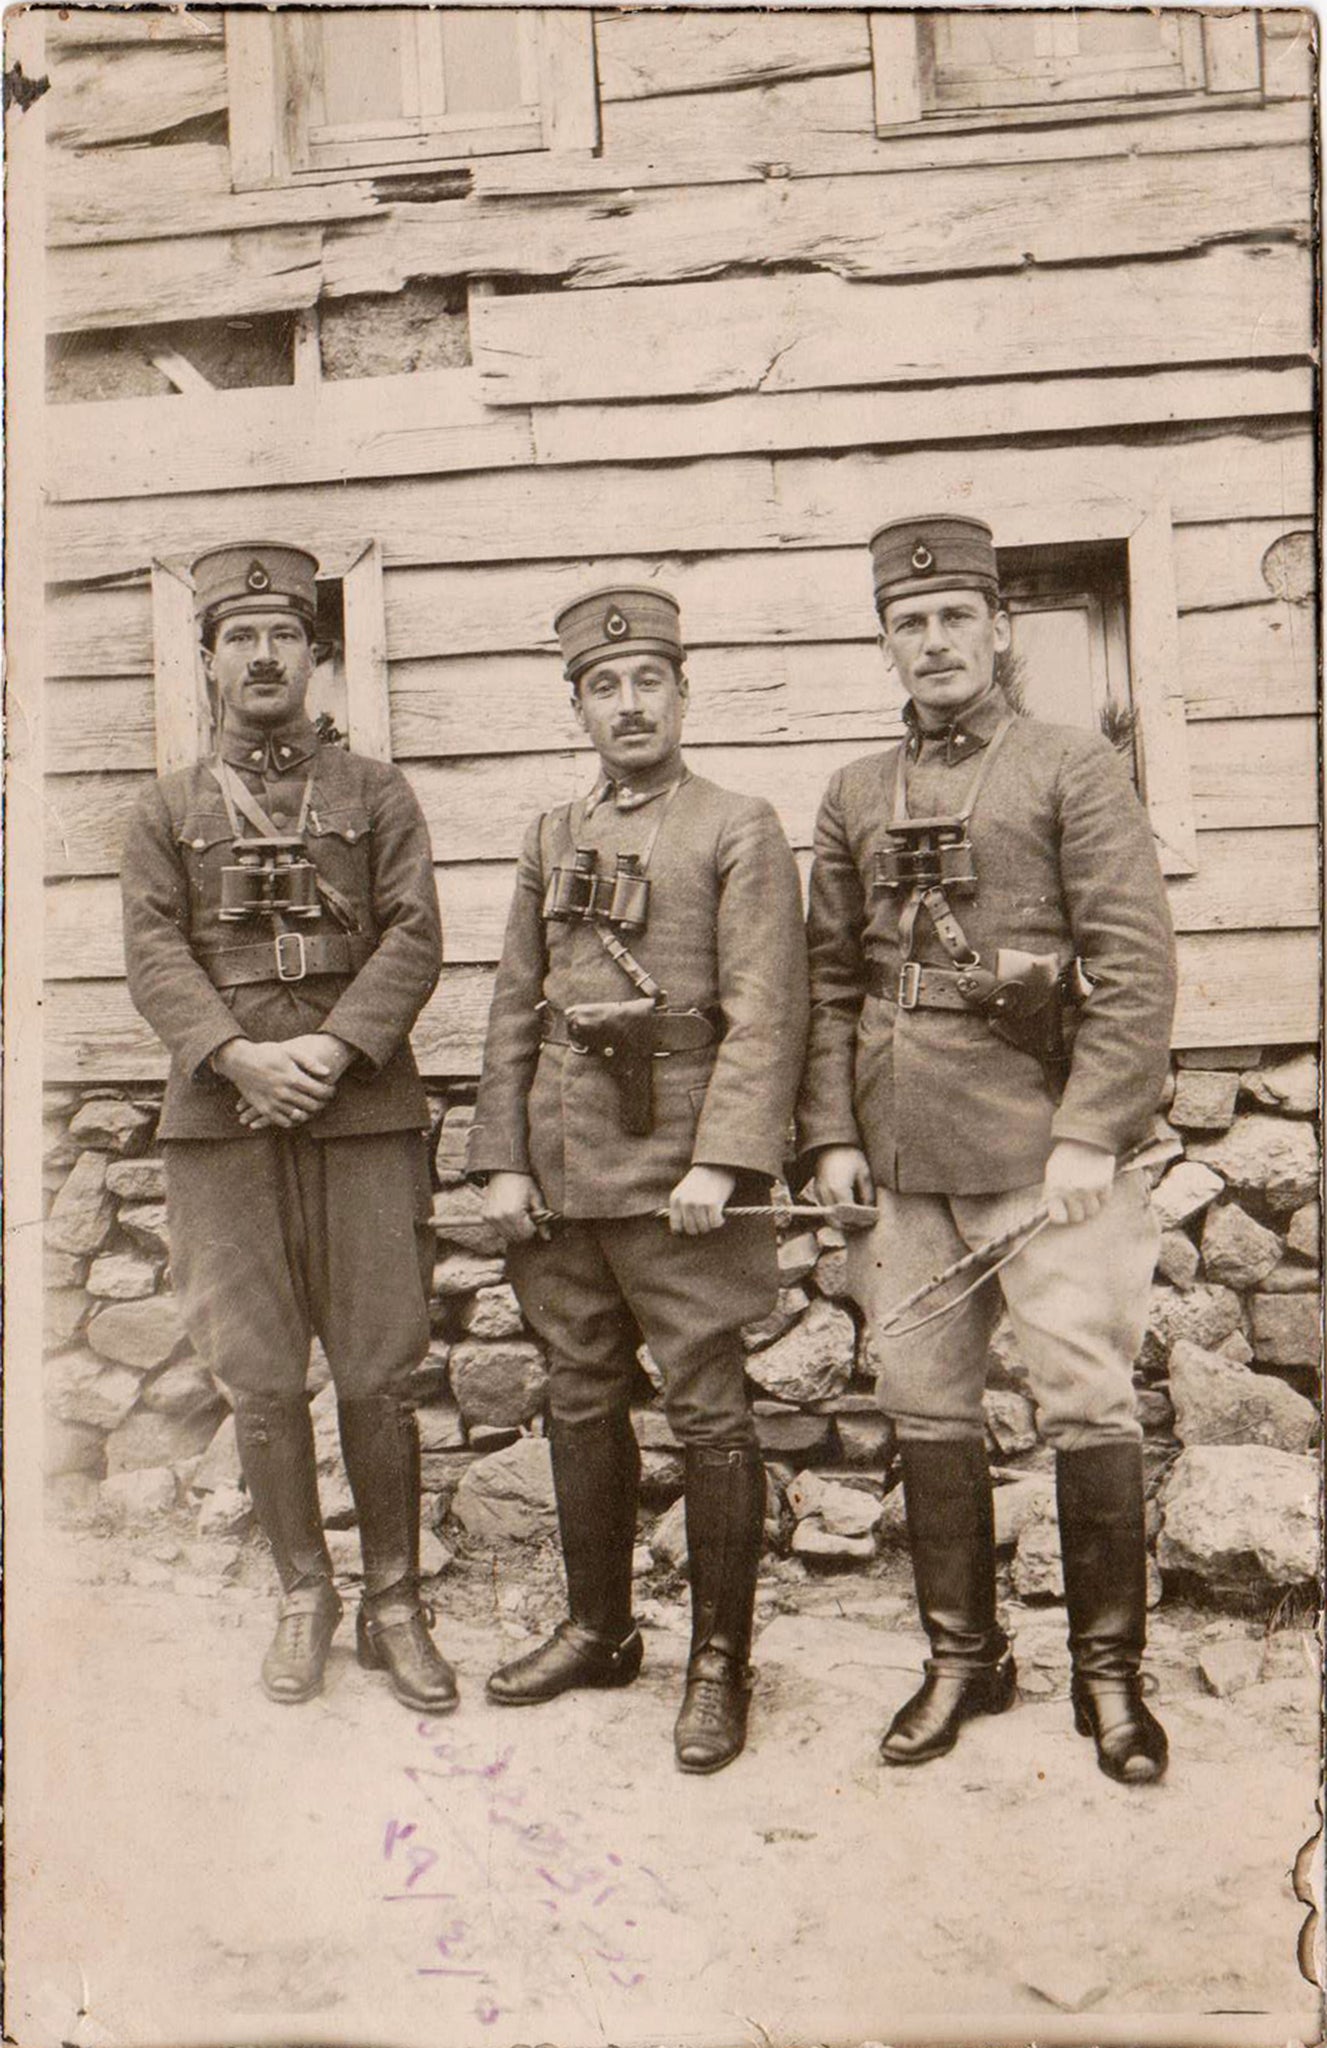 [FOTOĞRAF - KURTULUŞ SAVAŞI] "Düzakça hatırası" yazılı, Kurtuluş Savaşı subayları. 1339 (1922)